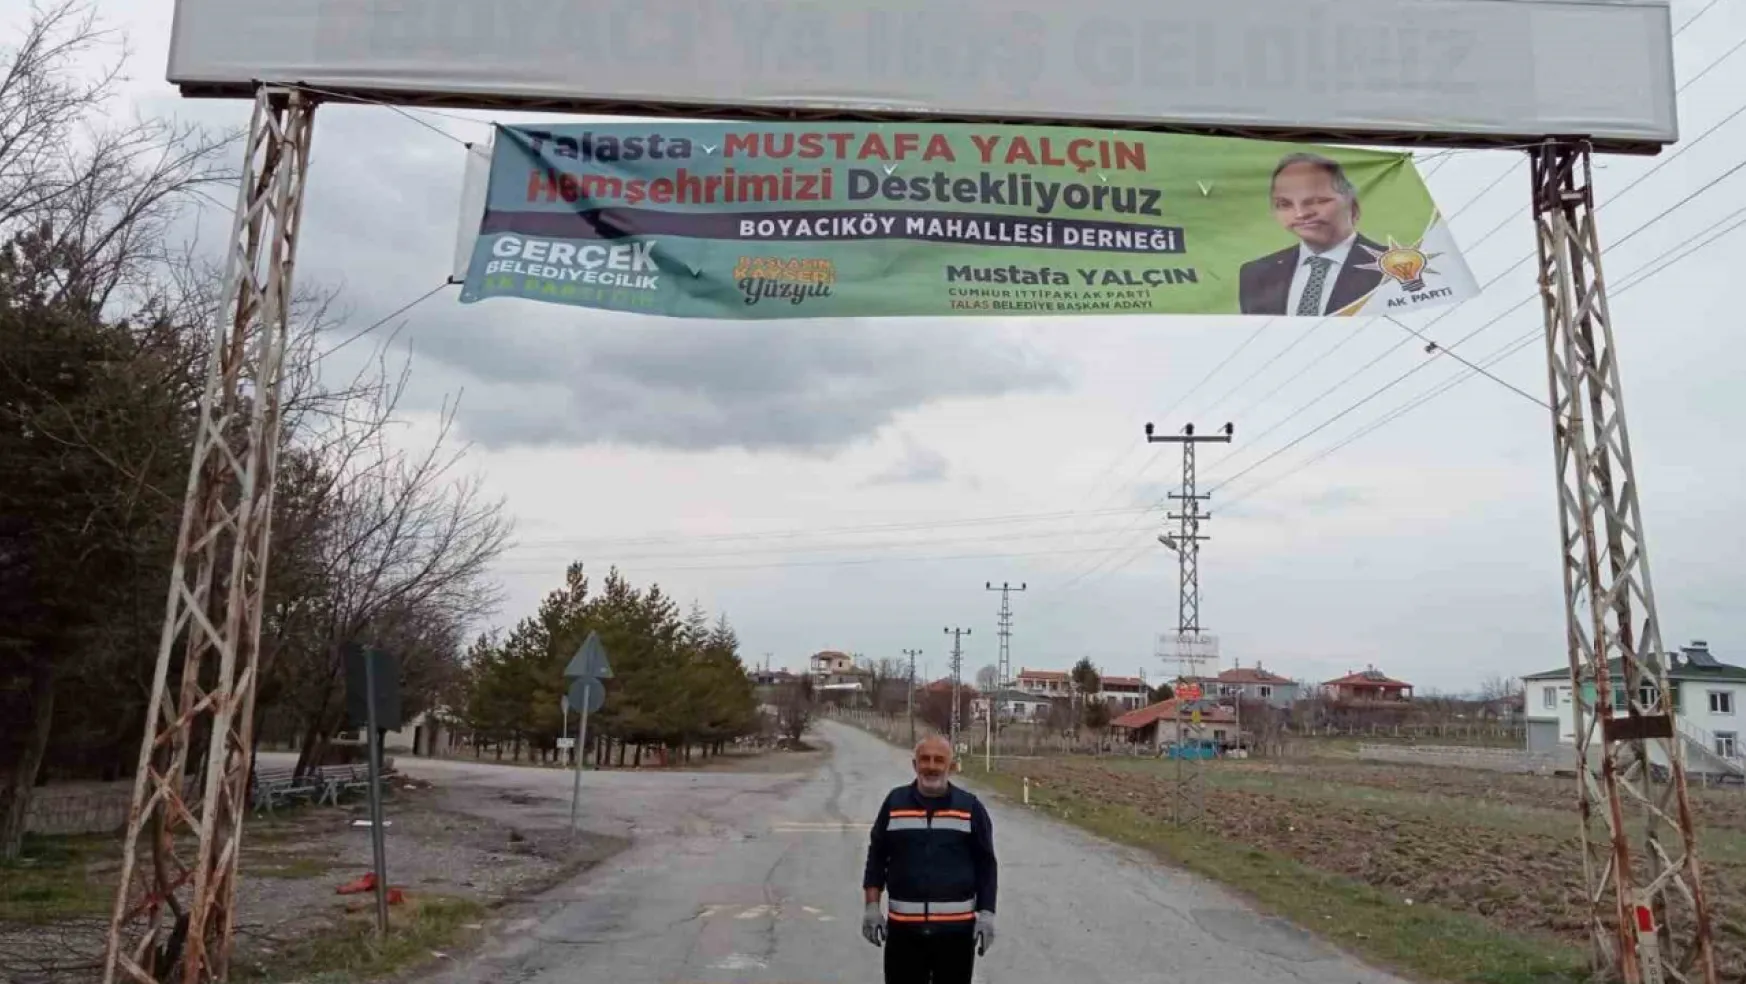 Baba ocağı Boyacı'dan Mustafa Yalçın'a destek